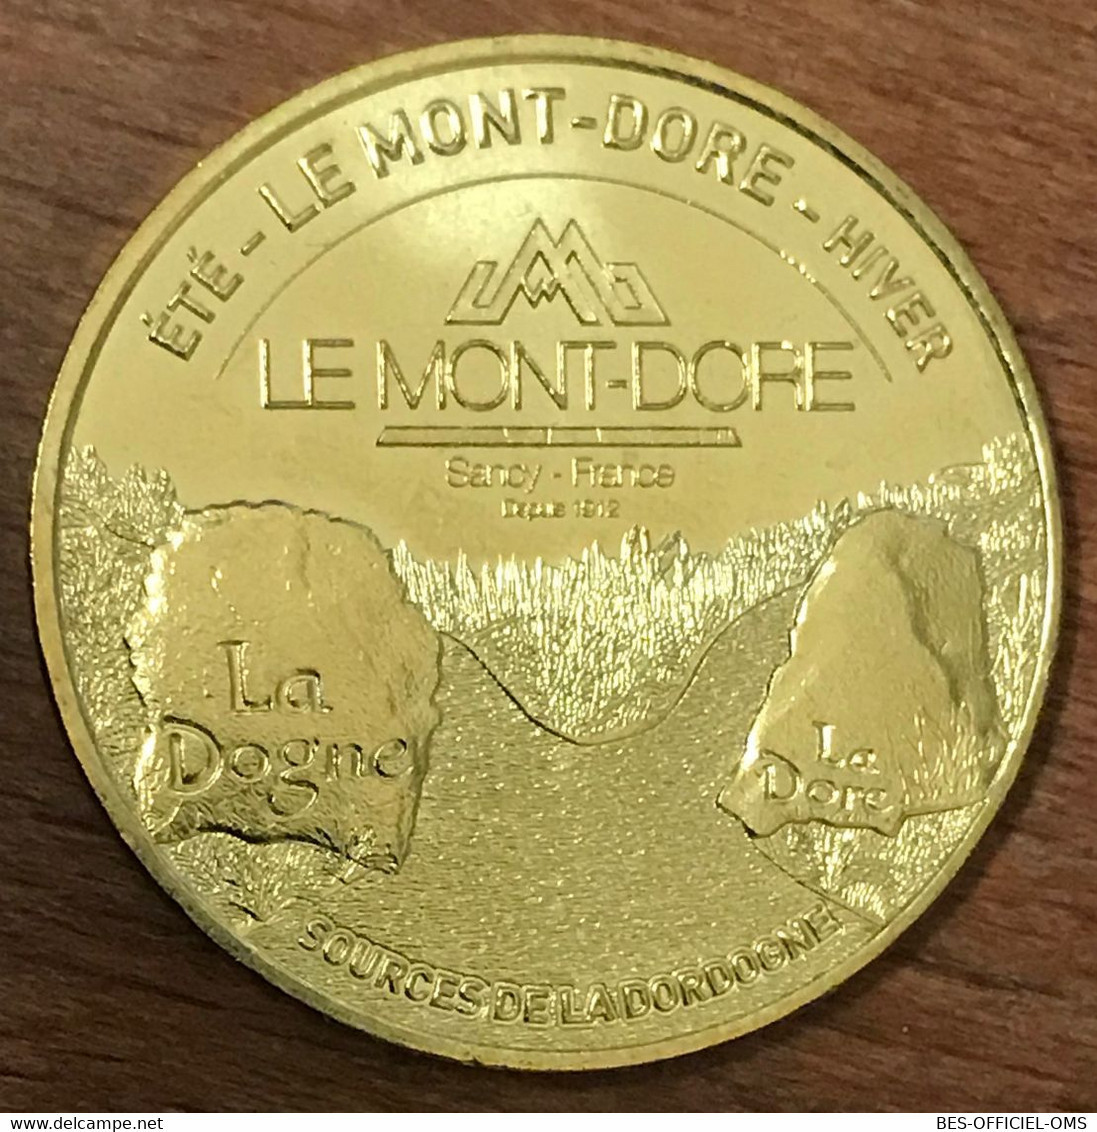 63 MONT DORE PUY DE SANCY SOURCES DE LA DORDOGNE MDP 2019 MÉDAILLE MONNAIE DE PARIS JETON TOURISTIQUE MEDALS COIN TOKENS - 2019